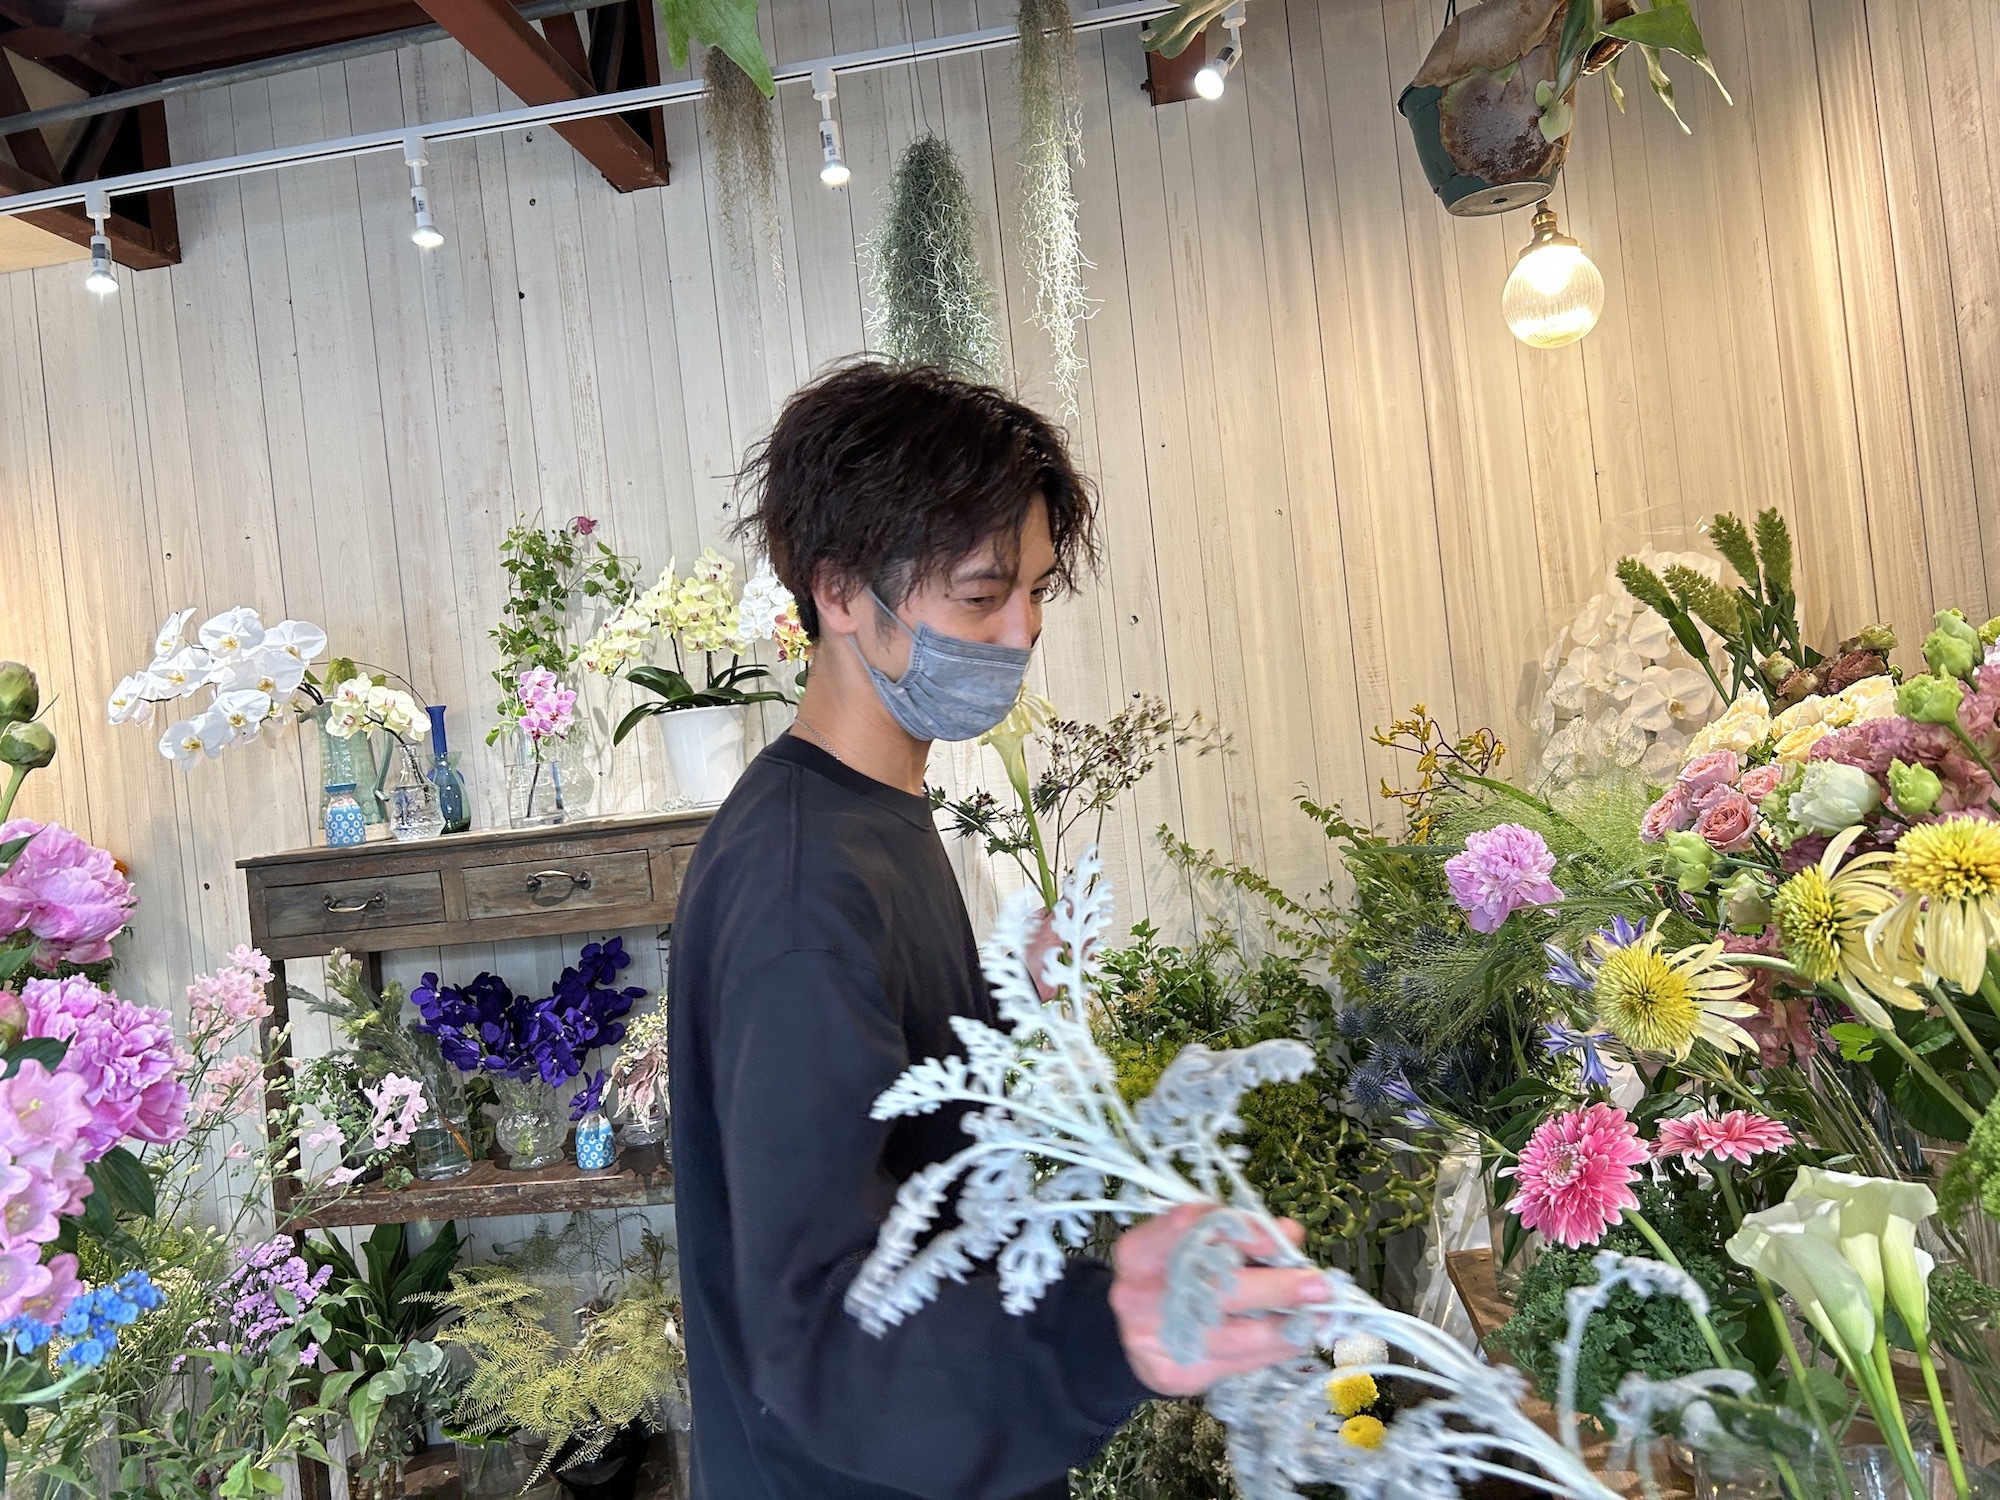 「花の質が良いので、自分たちは少し手を加える程度なんです」と話すのは駿幸さん